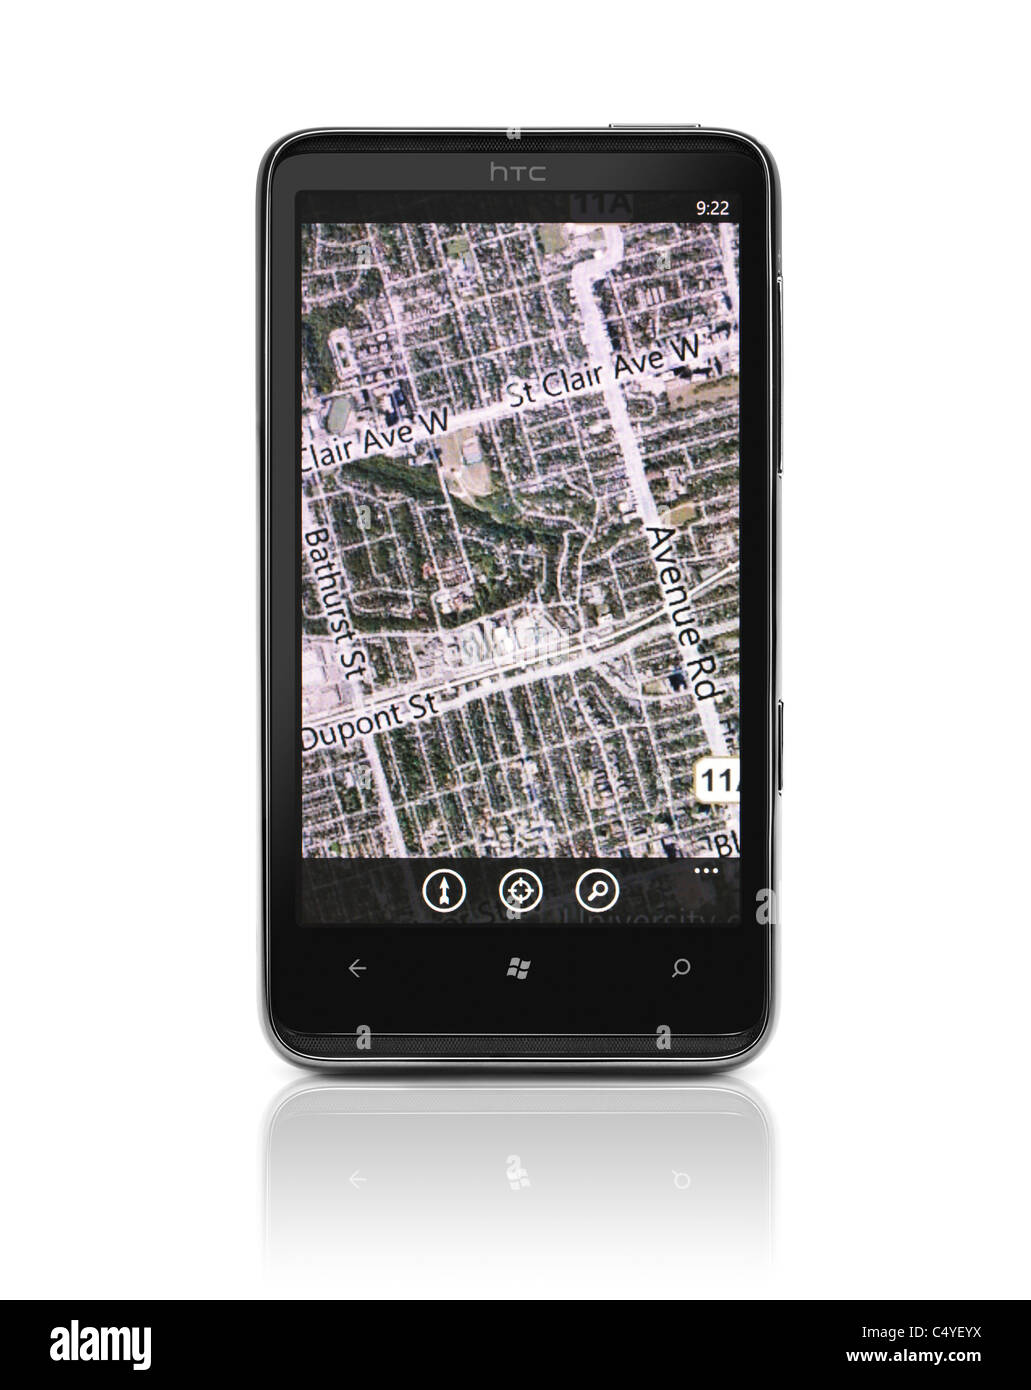 7 Windows Phone. HTC HD7 smartphone avec Bing Maps navigation GPS sur son affichage isolé sur fond blanc Banque D'Images